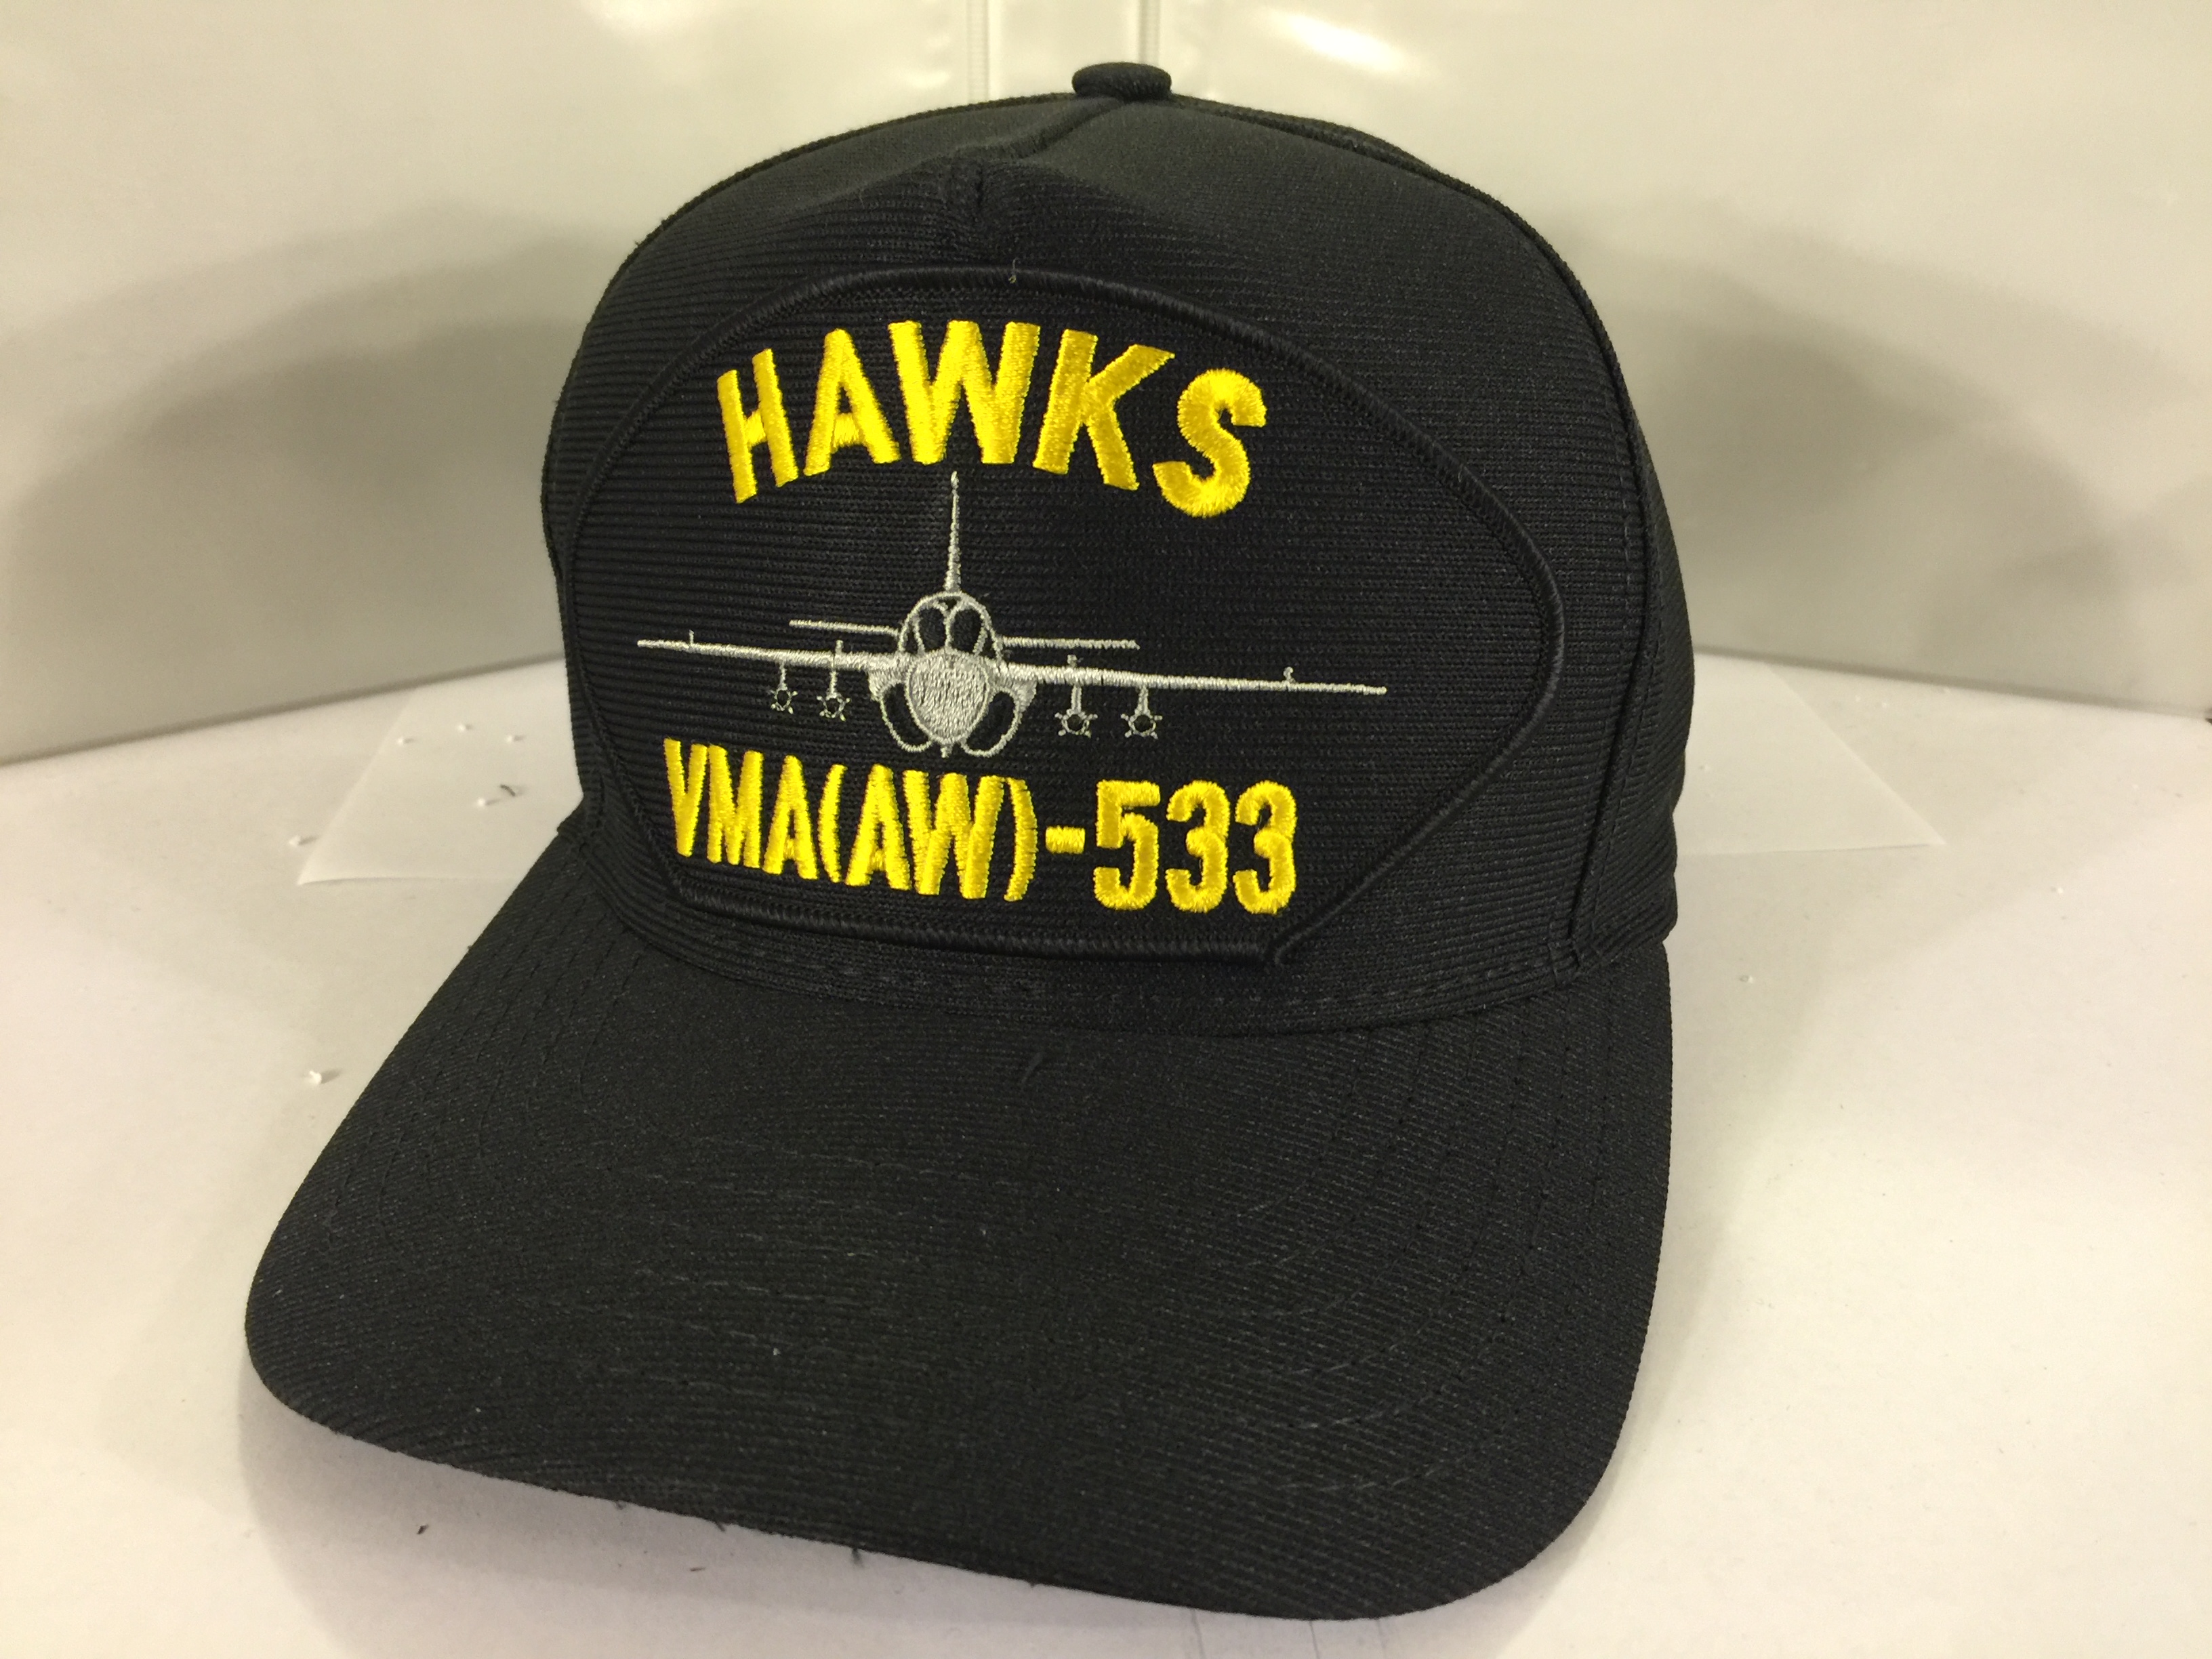 VMA(AW)-533 Squadron Ballcap (Black)